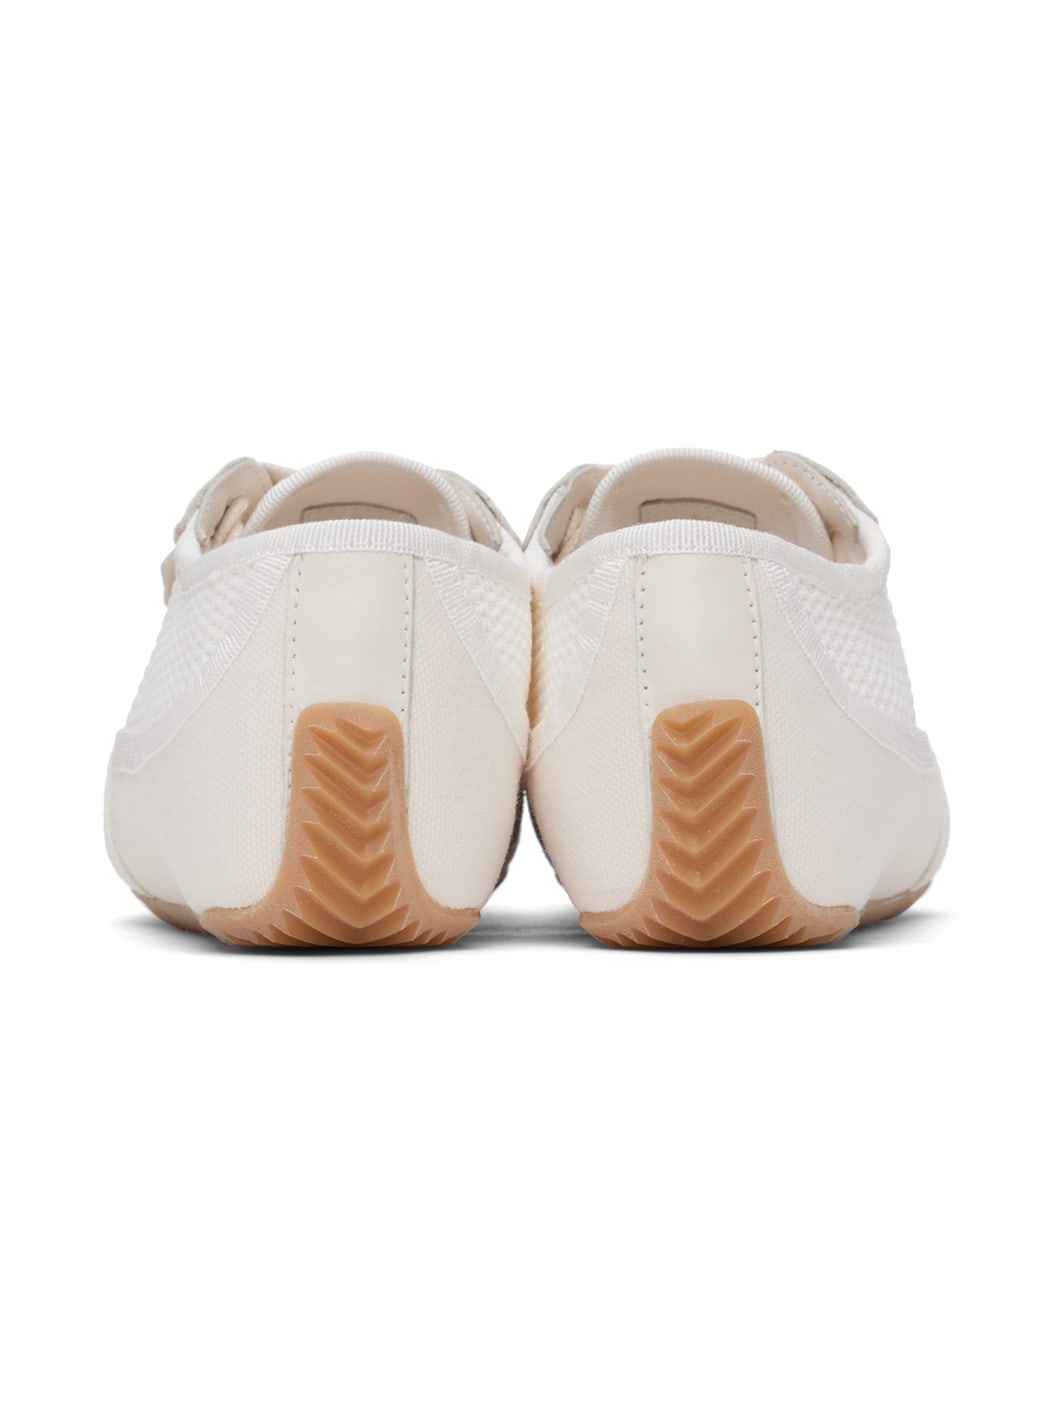 Off-White & White Bonnie Sneakers - 2